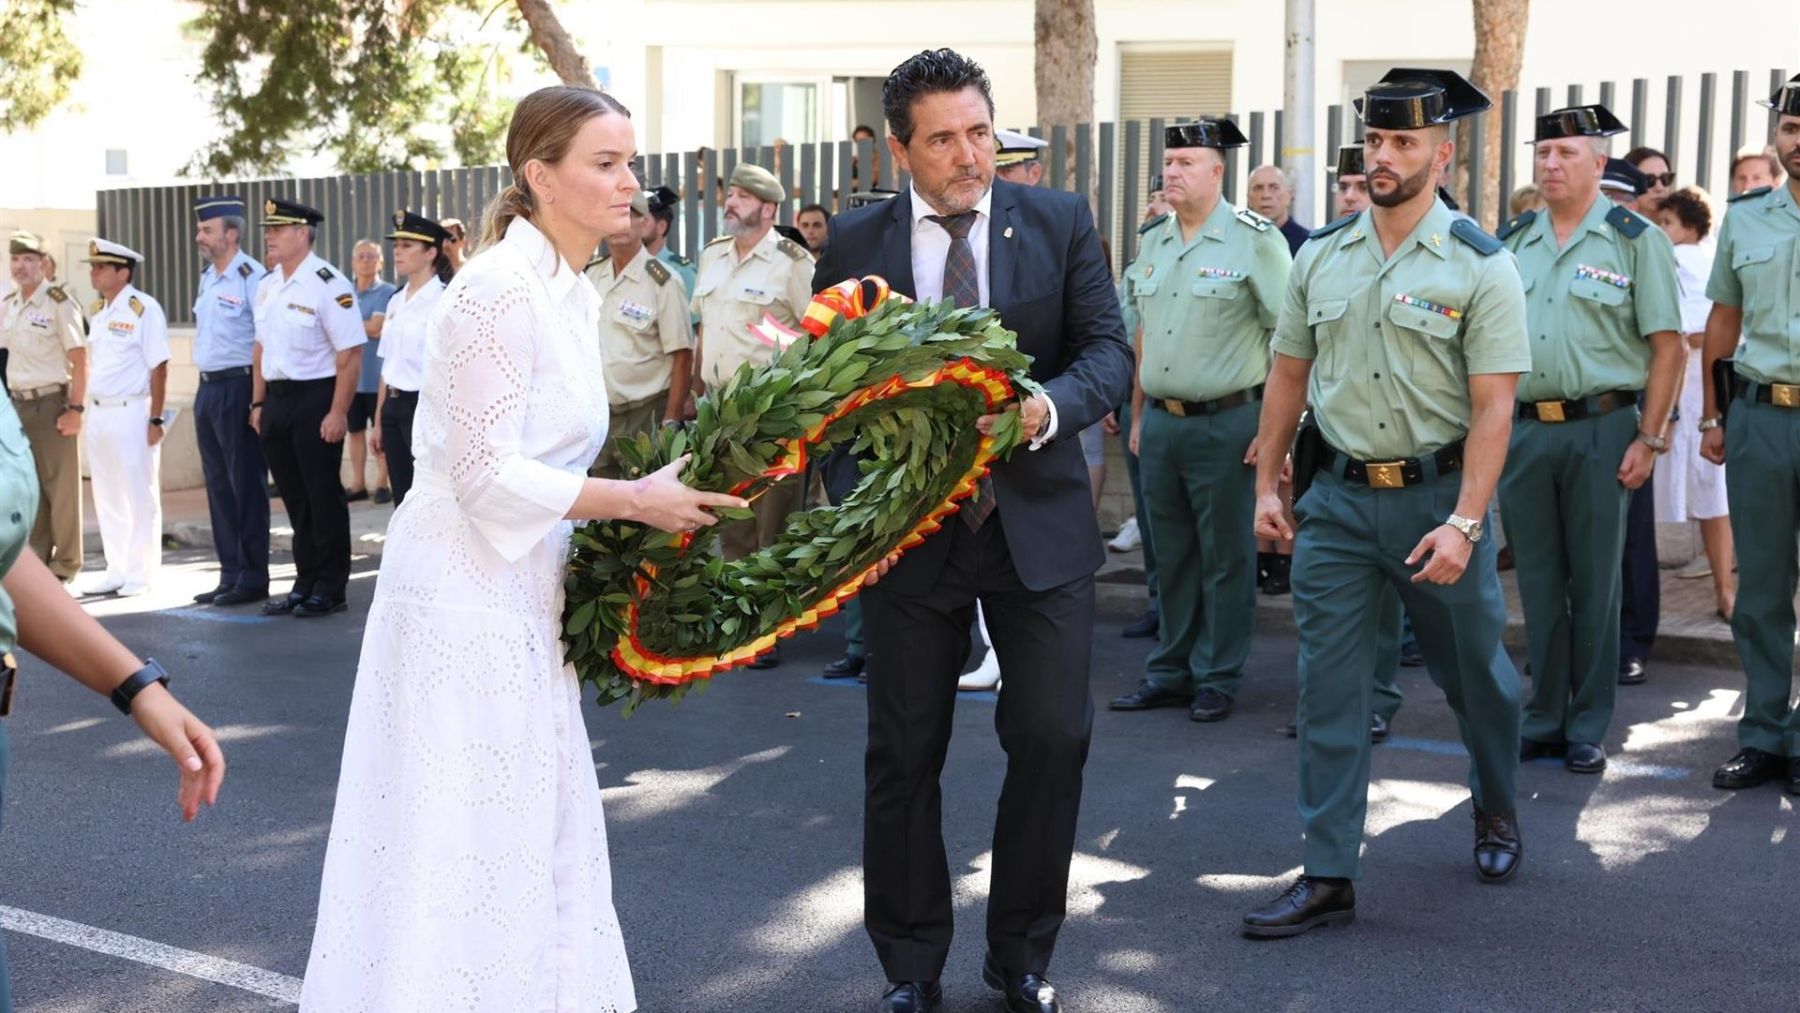 Marga Prohens y el alcalde de Calvià depositan la corona de flores en memoria de los dos guardias civiles asesinados por ETA.  (Europa Press)